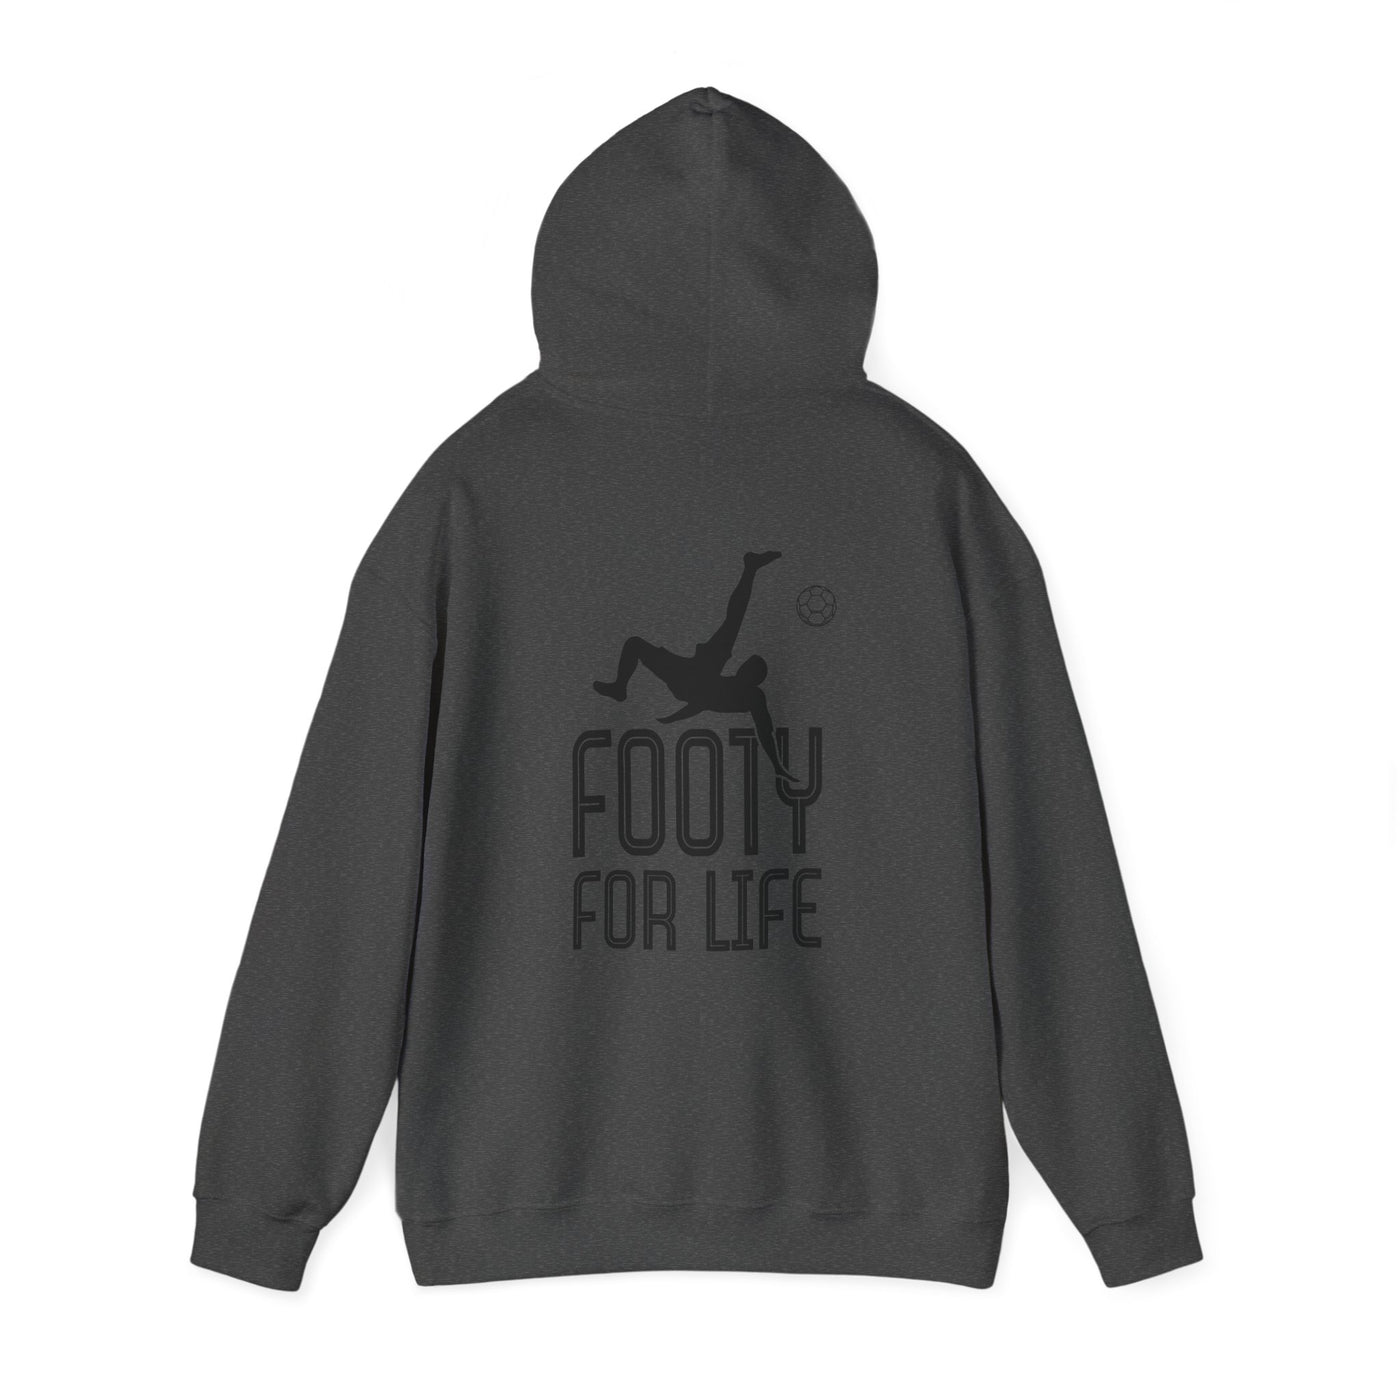 "Footy For Life" Hoodie, Hooded Sweatshirt